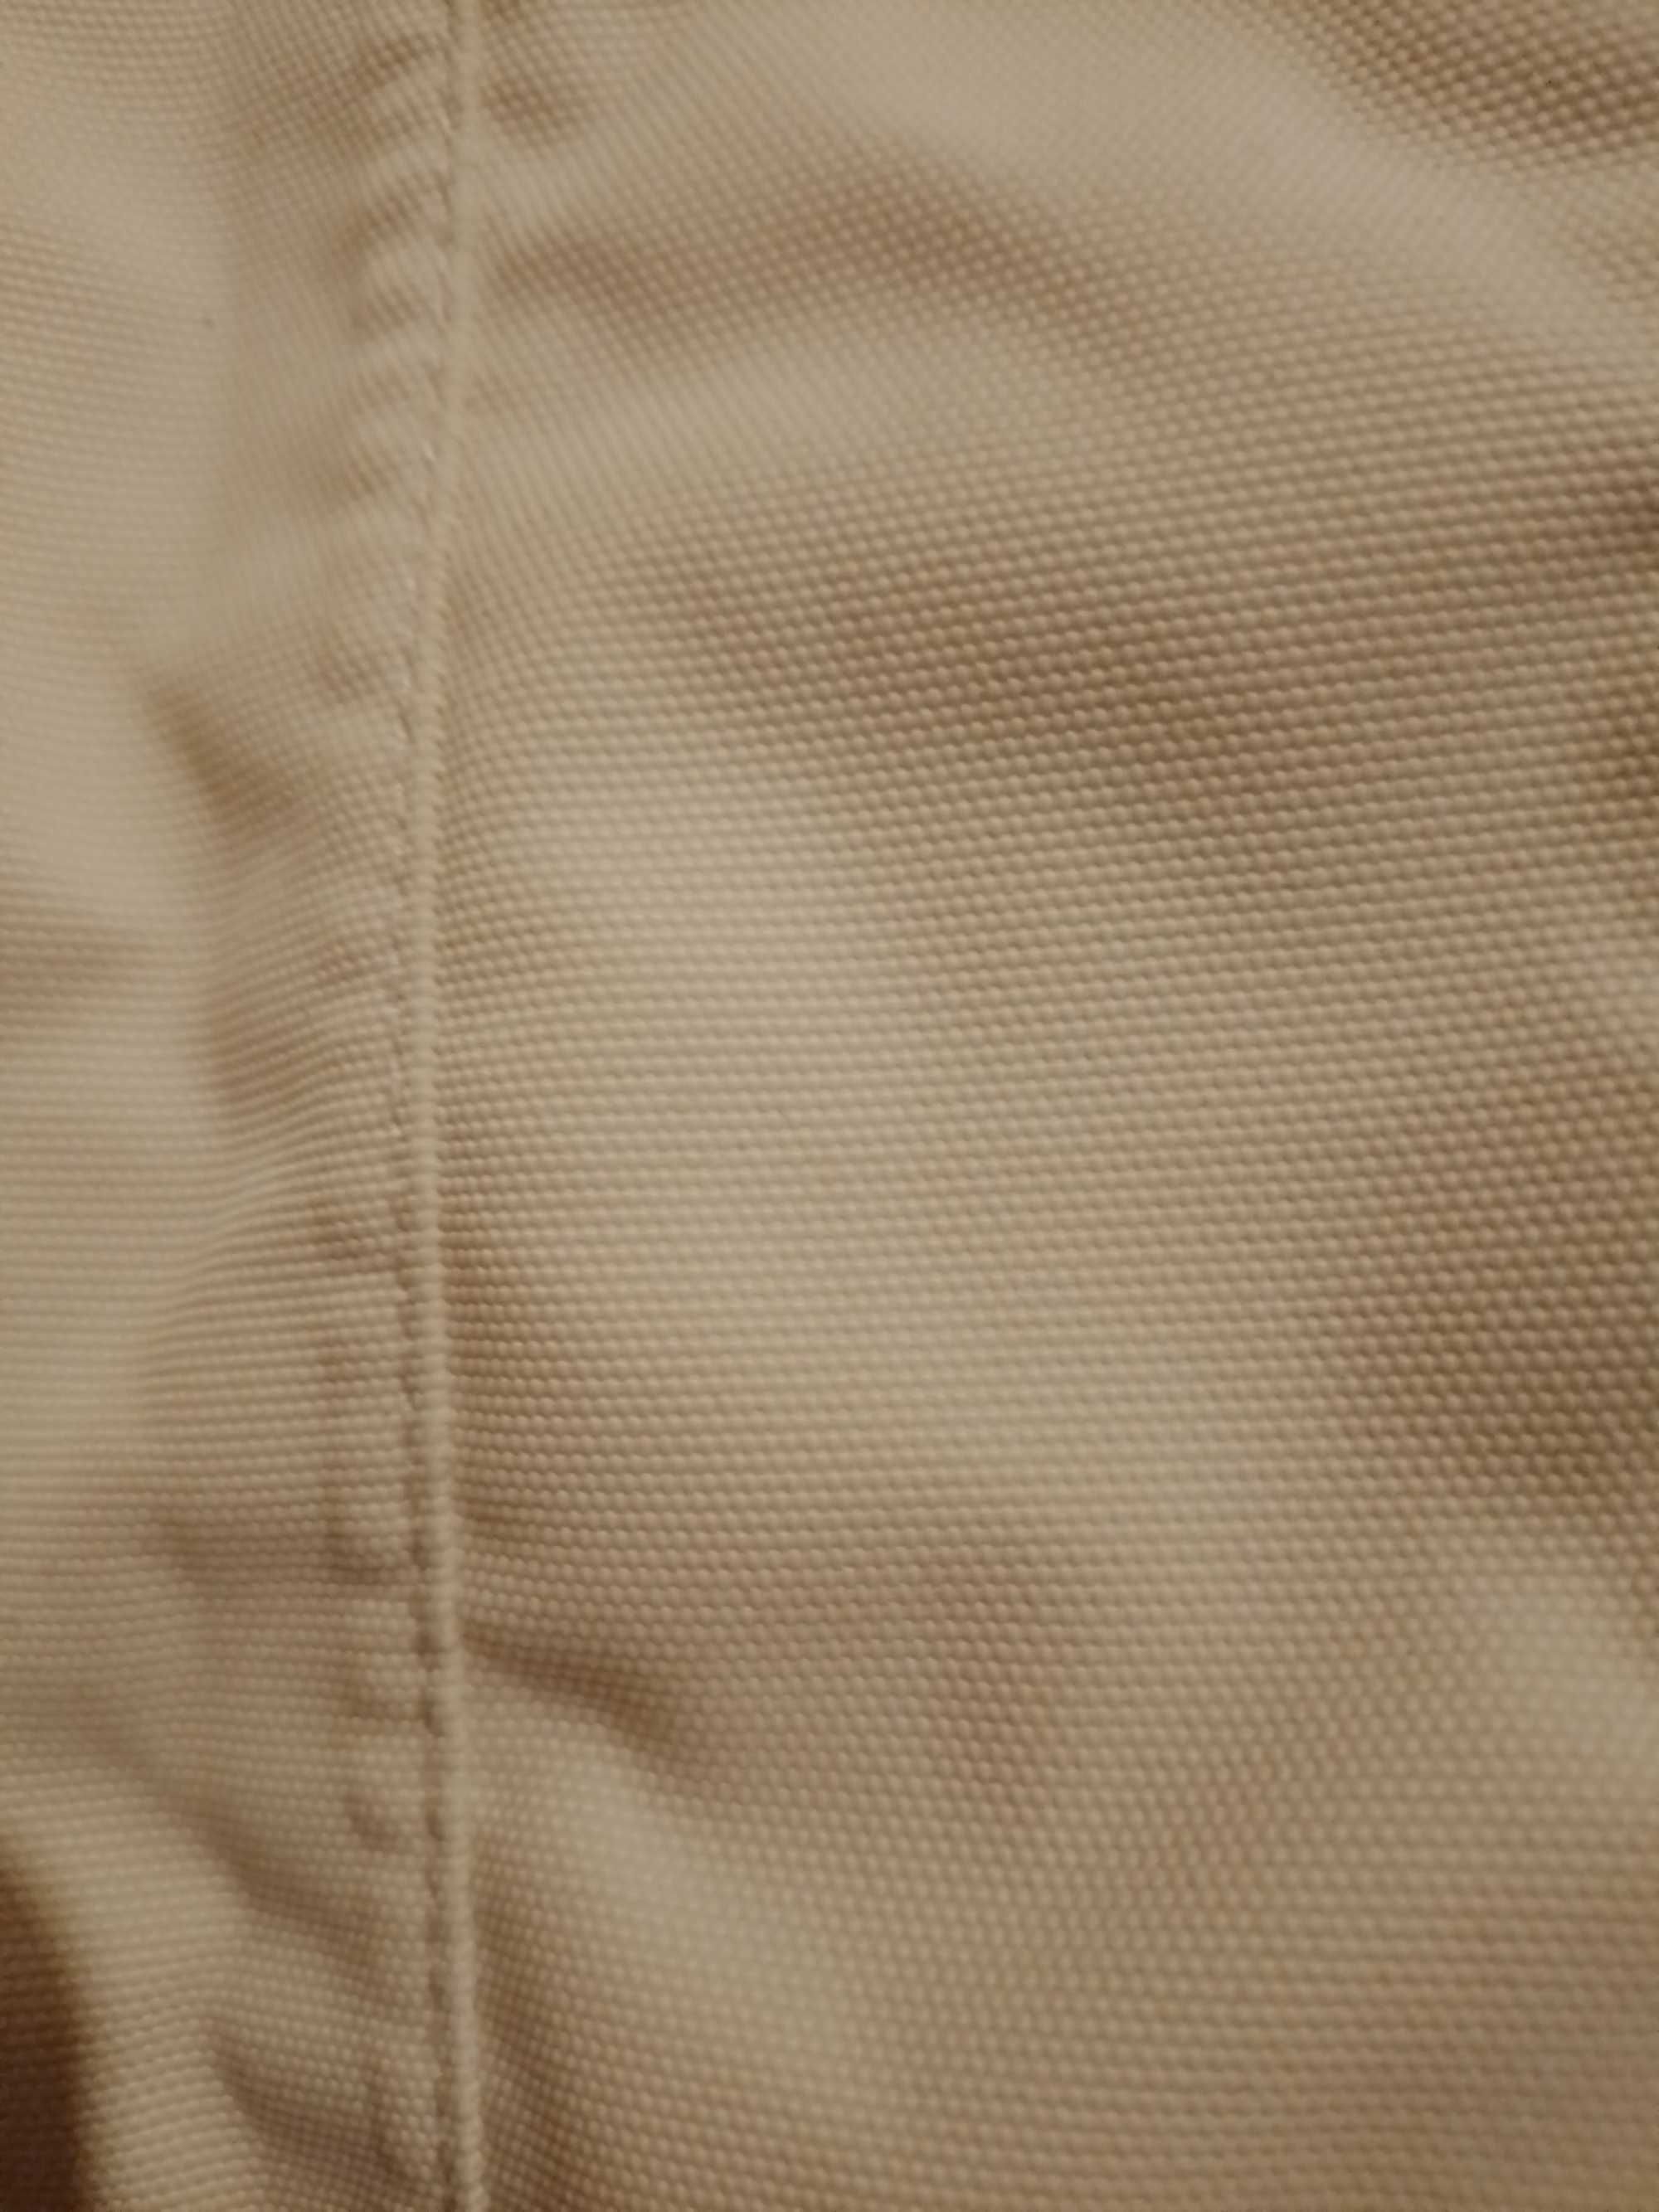 Куртка женская дождевик прорезиненная на рост 160-165